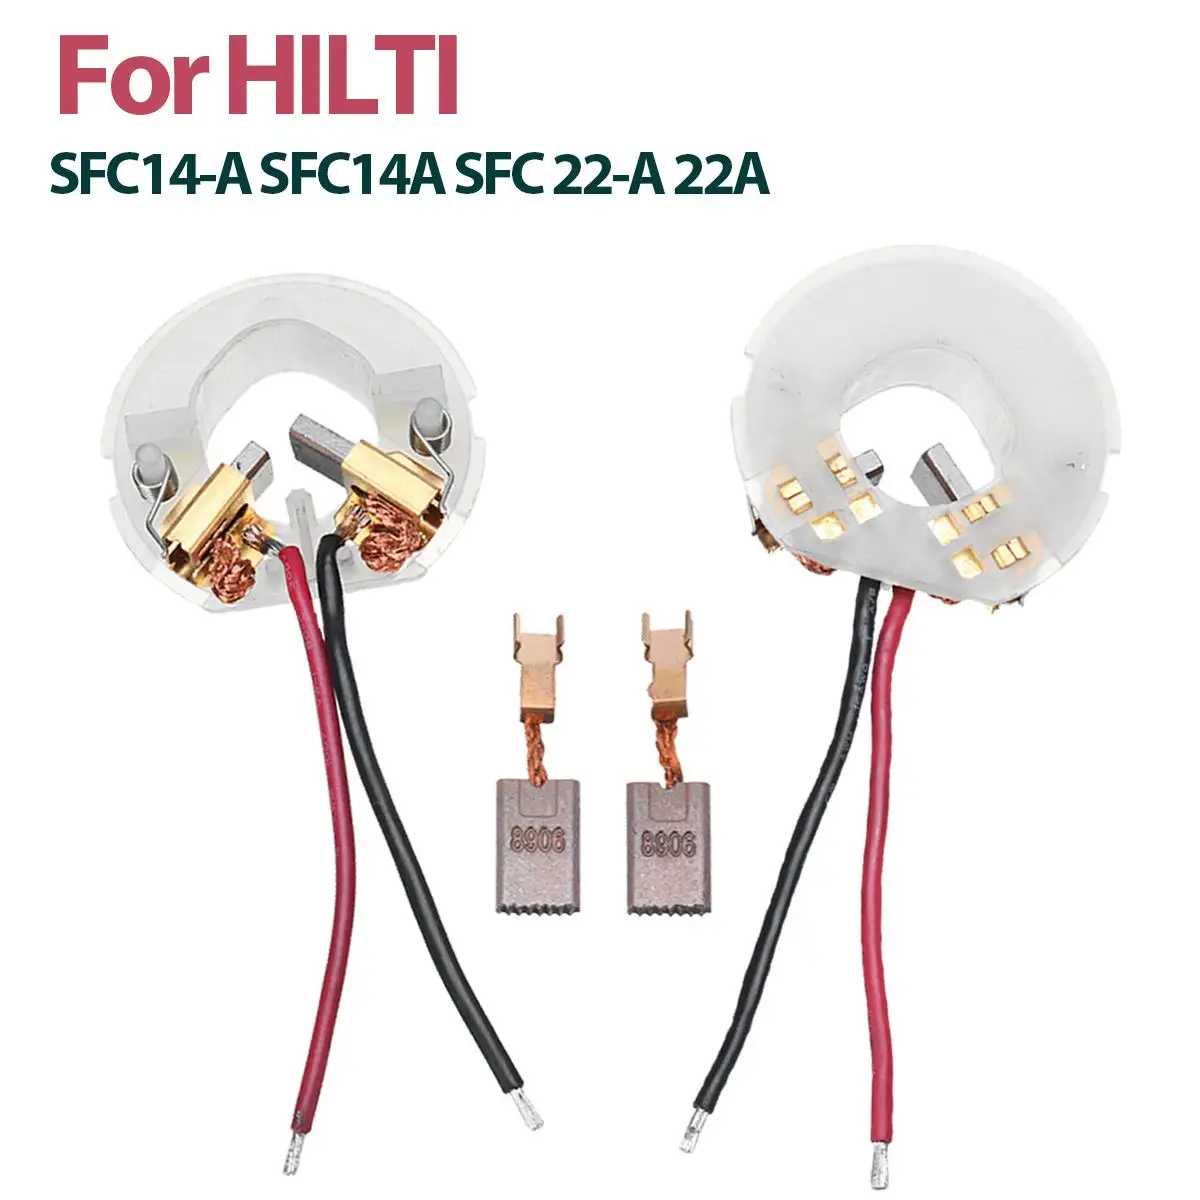 1 пара карбоновых щеток с 2 шт. карбоновых щеток Замена для HILTI SFC14-A SFC14A SFC 22-A 22A держатель щеток для электроинструмента